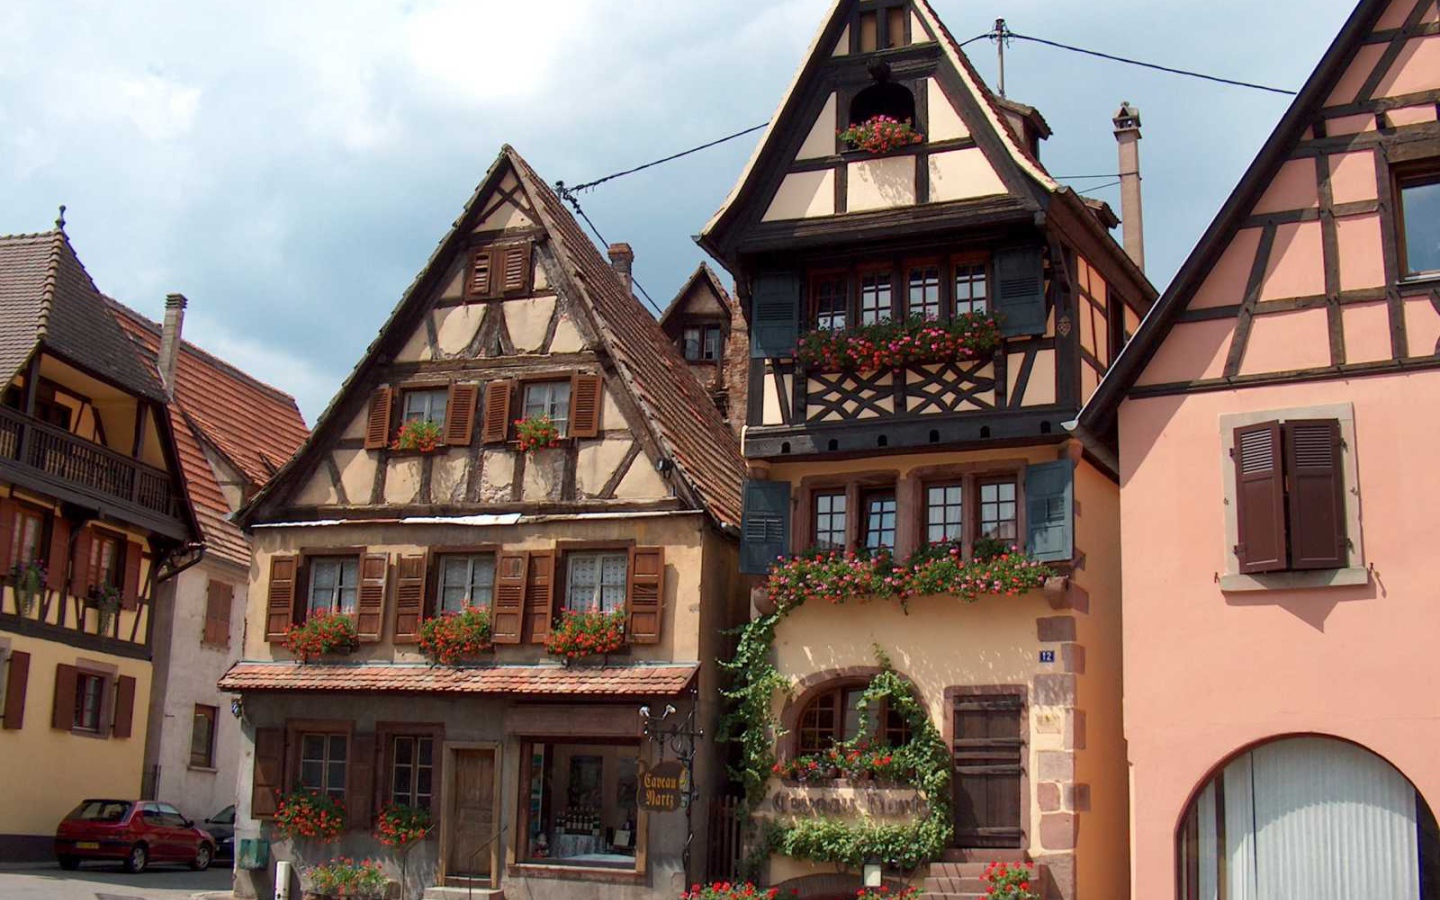 Городские дома в Эльзасе, Франция